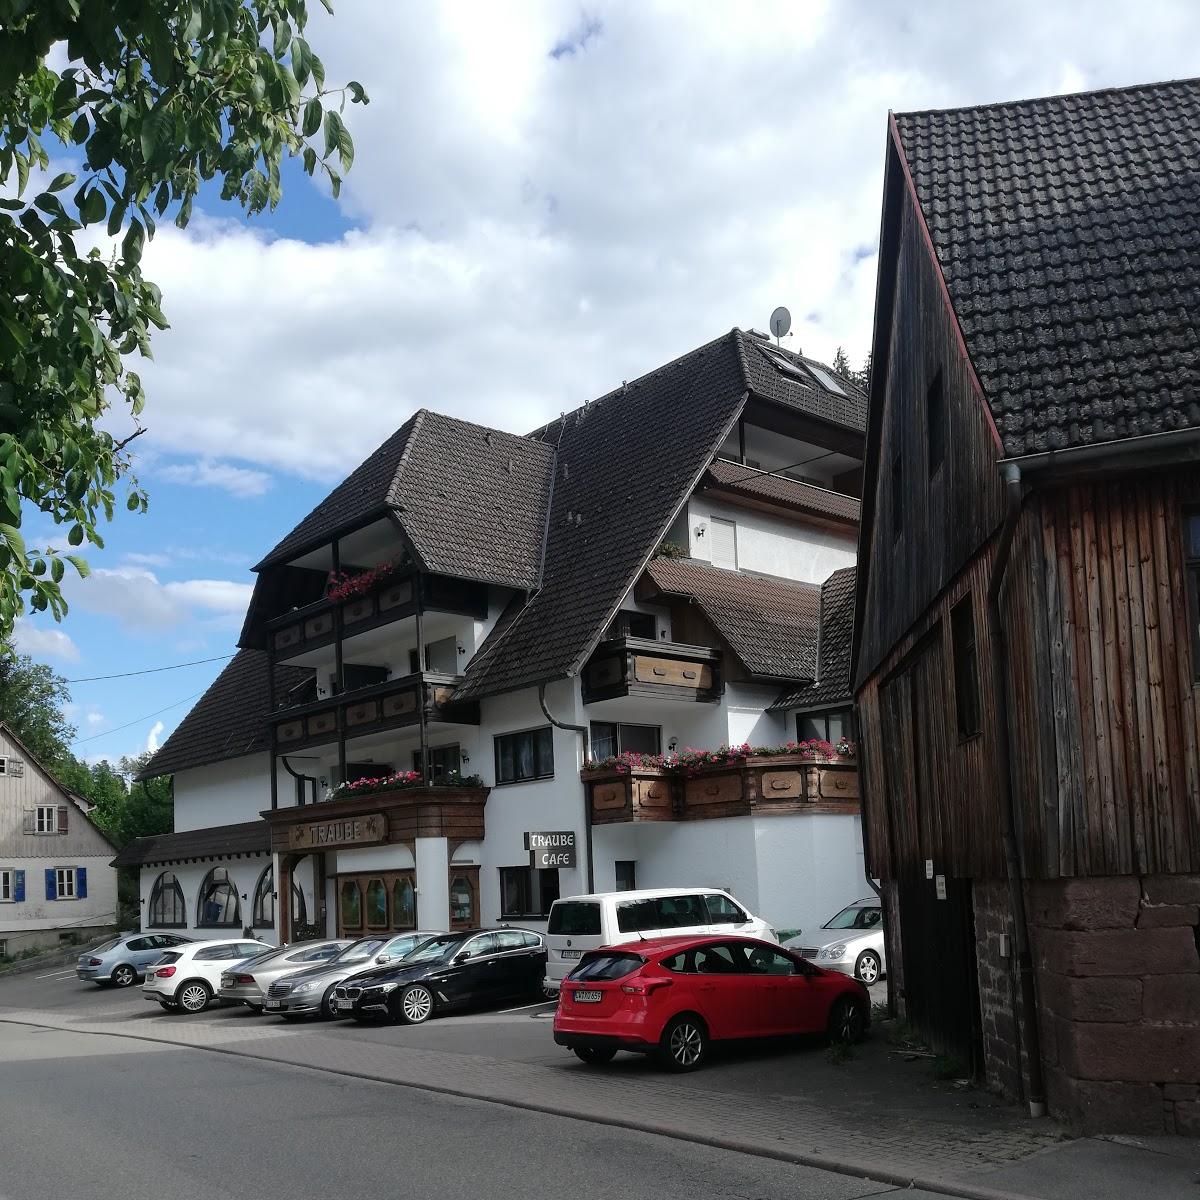 Restaurant "Hotel Traube" in Altensteig